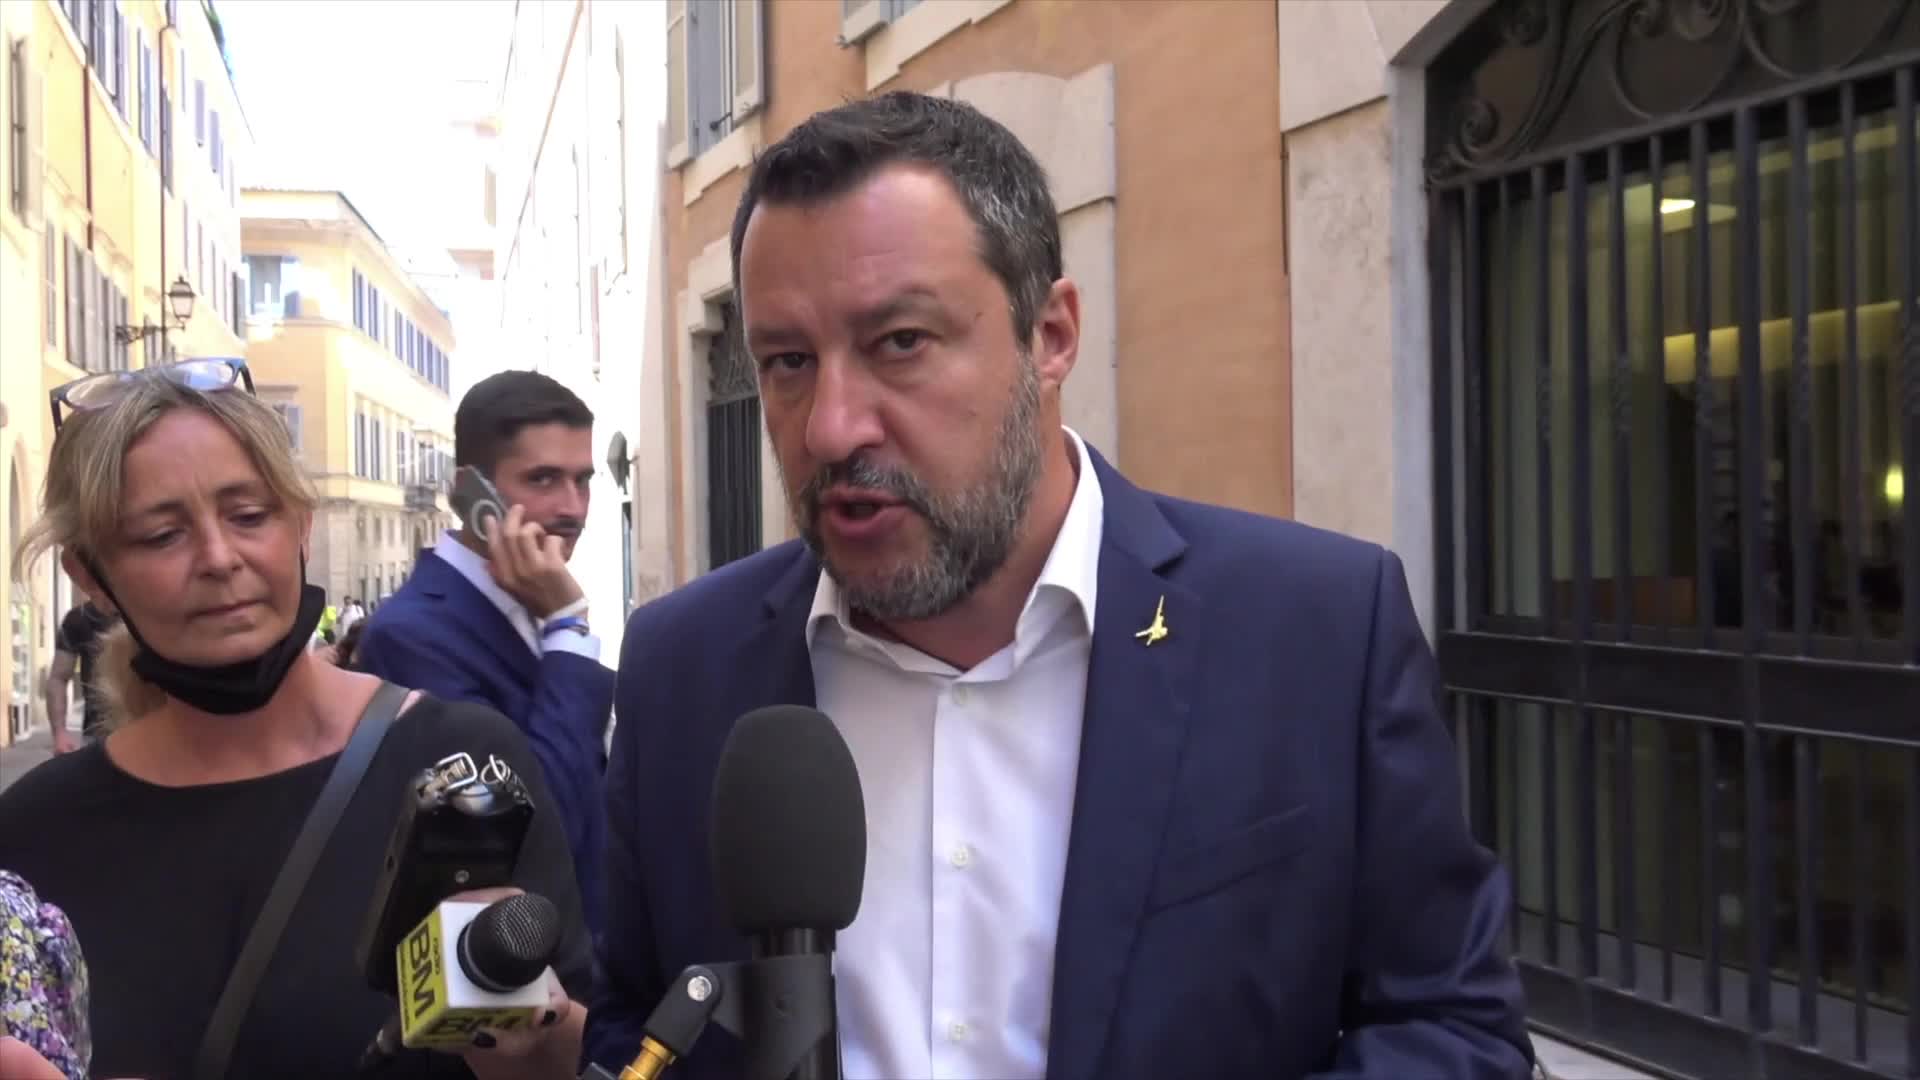 Covid, Salvini: "I giovani devono poter scegliere"